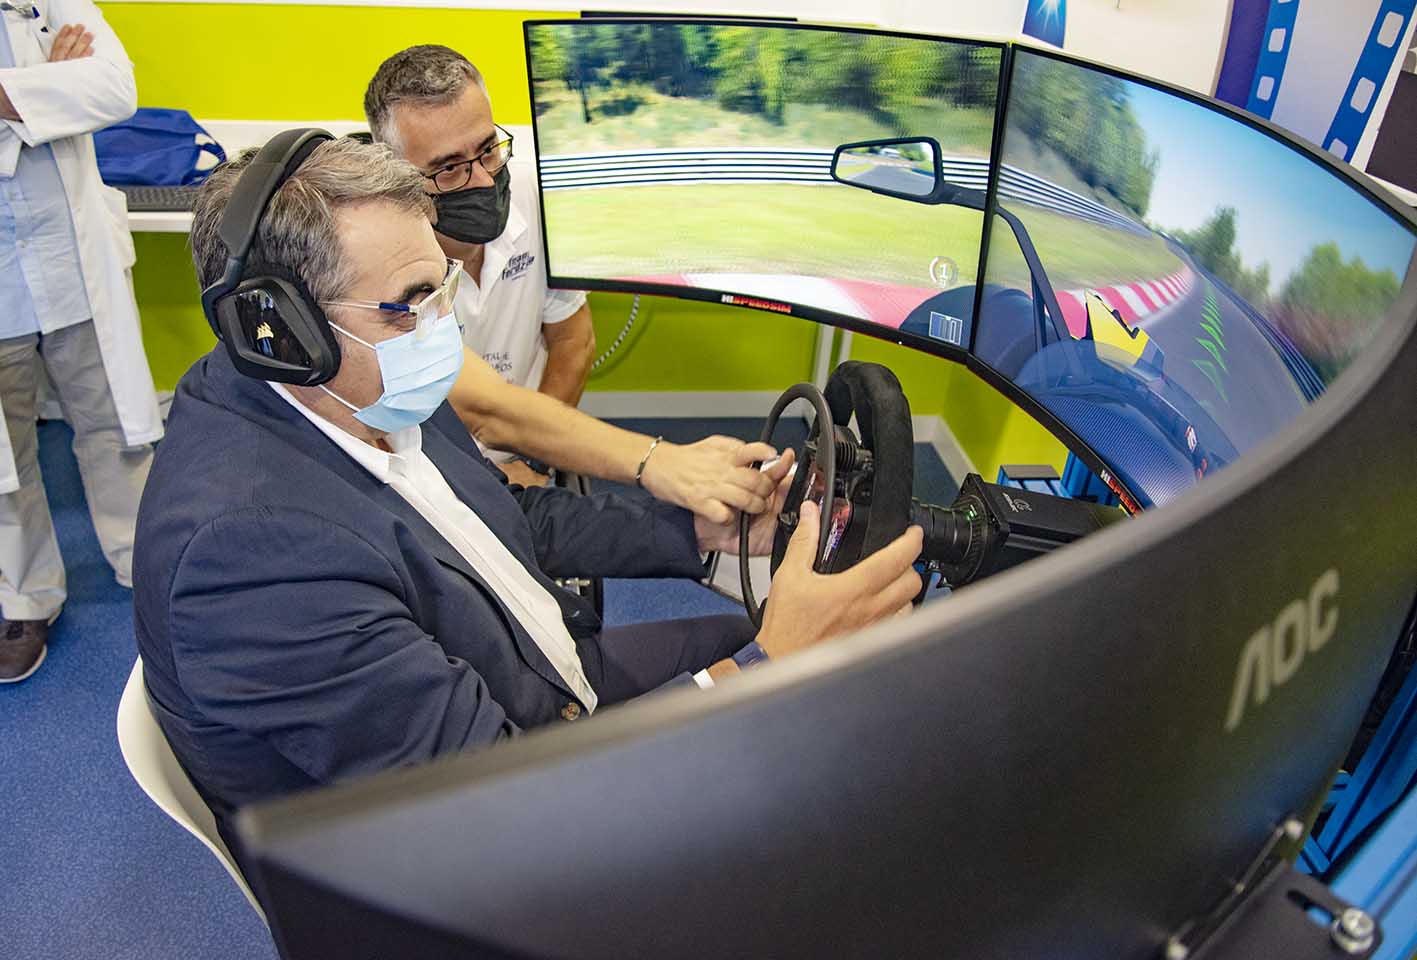 El consejero de Sanidad, Jesús Fernández Sanz, ha conducido un vehículo virtual con el que se enseña a los pacientes a "reconducir". Foto: Rebeca Arango.